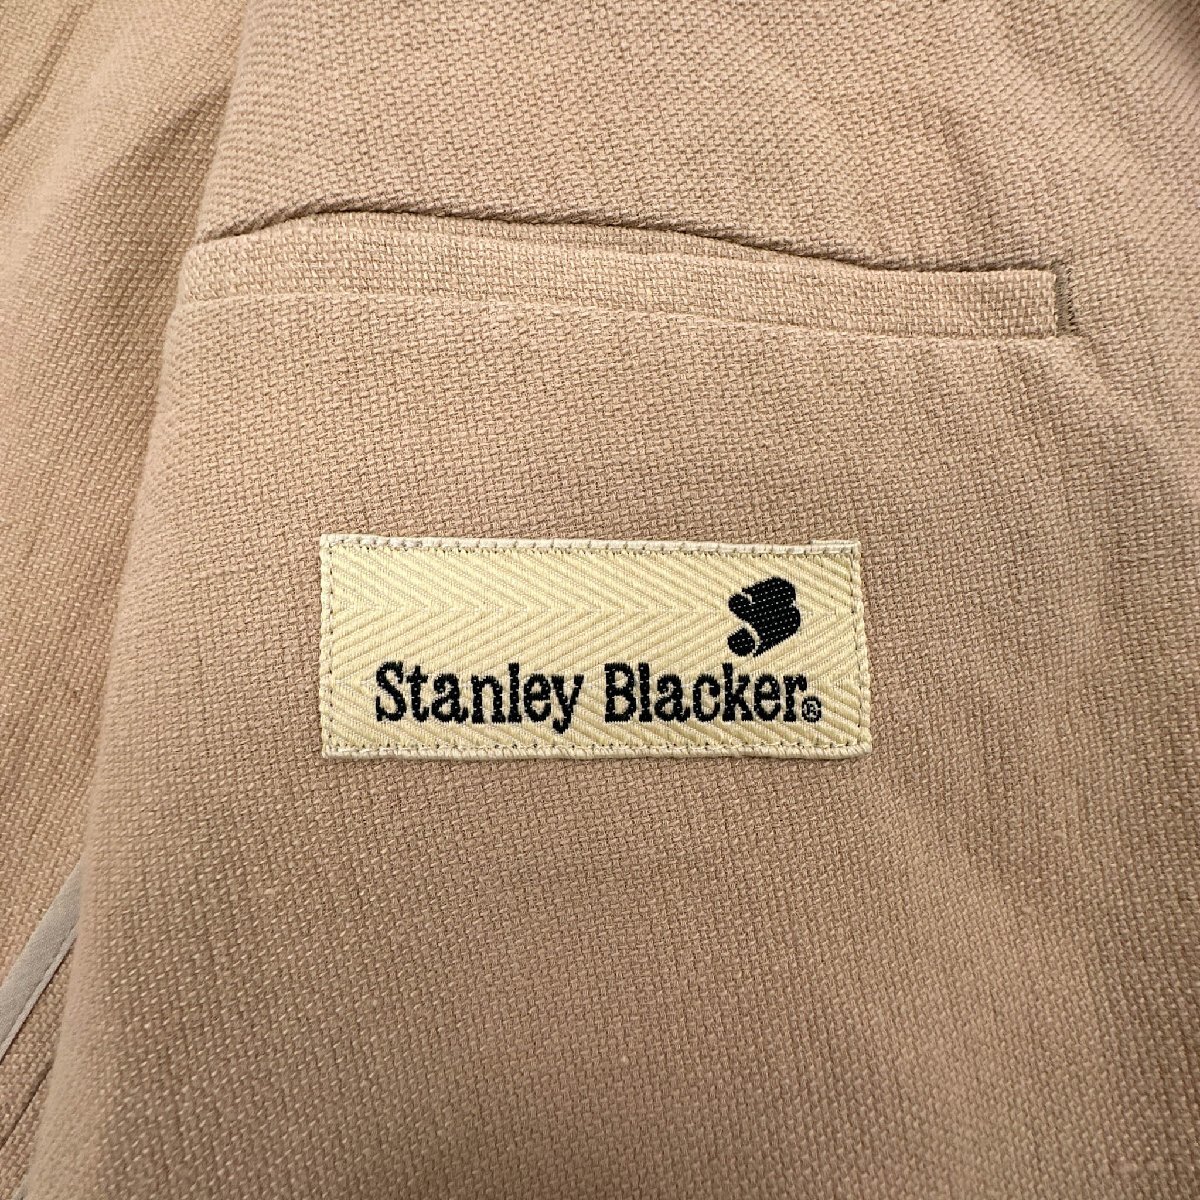 Stanley Blacker スタンリーブラッカー コットン&リネン系 ライト 4B テーラードジャケット コート / メンズ ベージュ 薄手 背抜き_画像6